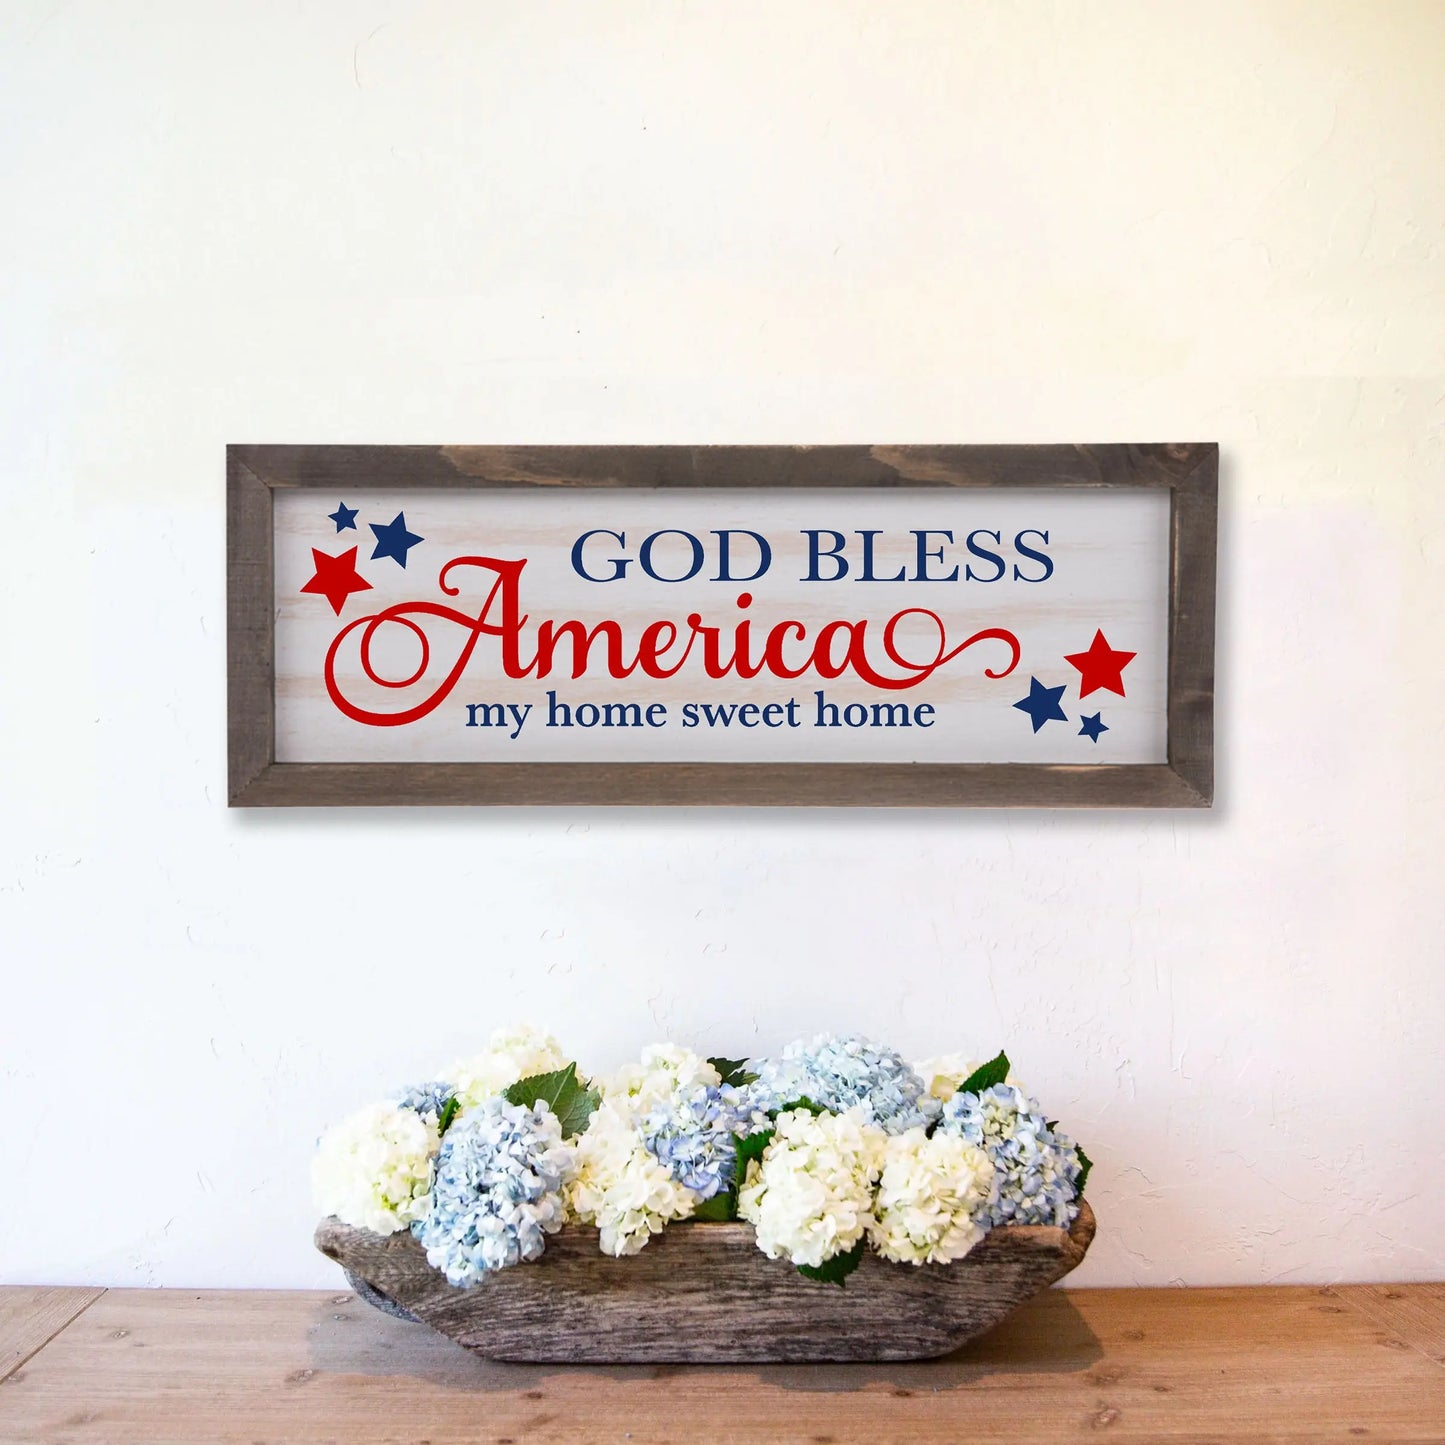 God Bless America Rustic Whitewashed Wood Frame Sign | 5.5" x 15" Farmhouse Decor | Christian Wood Decor amazingfaithdesigns